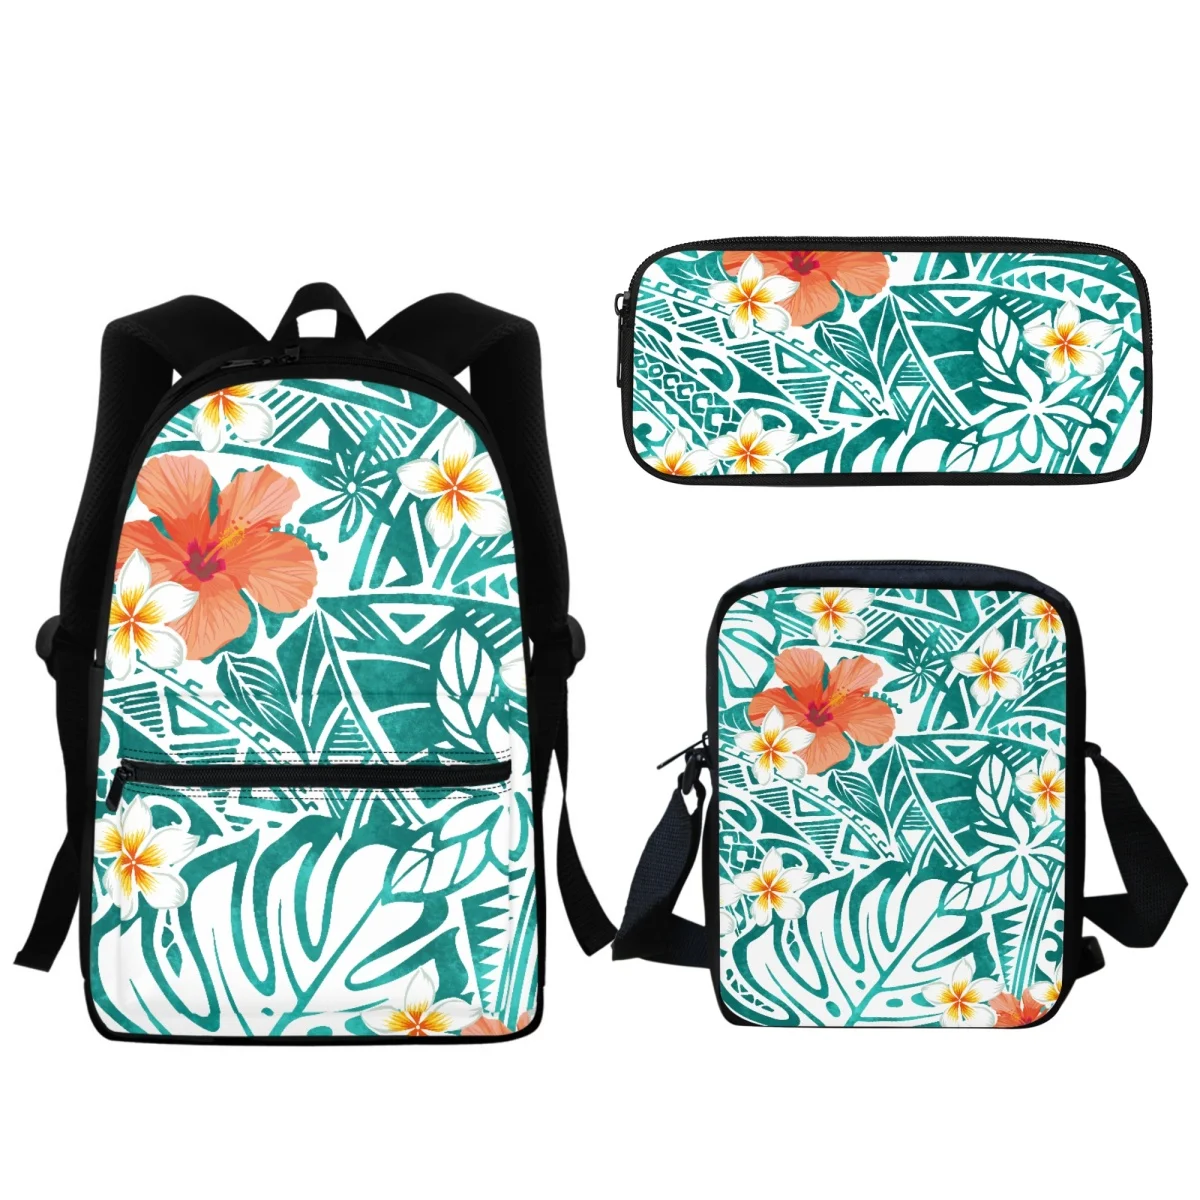 Новый школьный портфель для мальчиков и девочек в полинезийском стиле с принтом